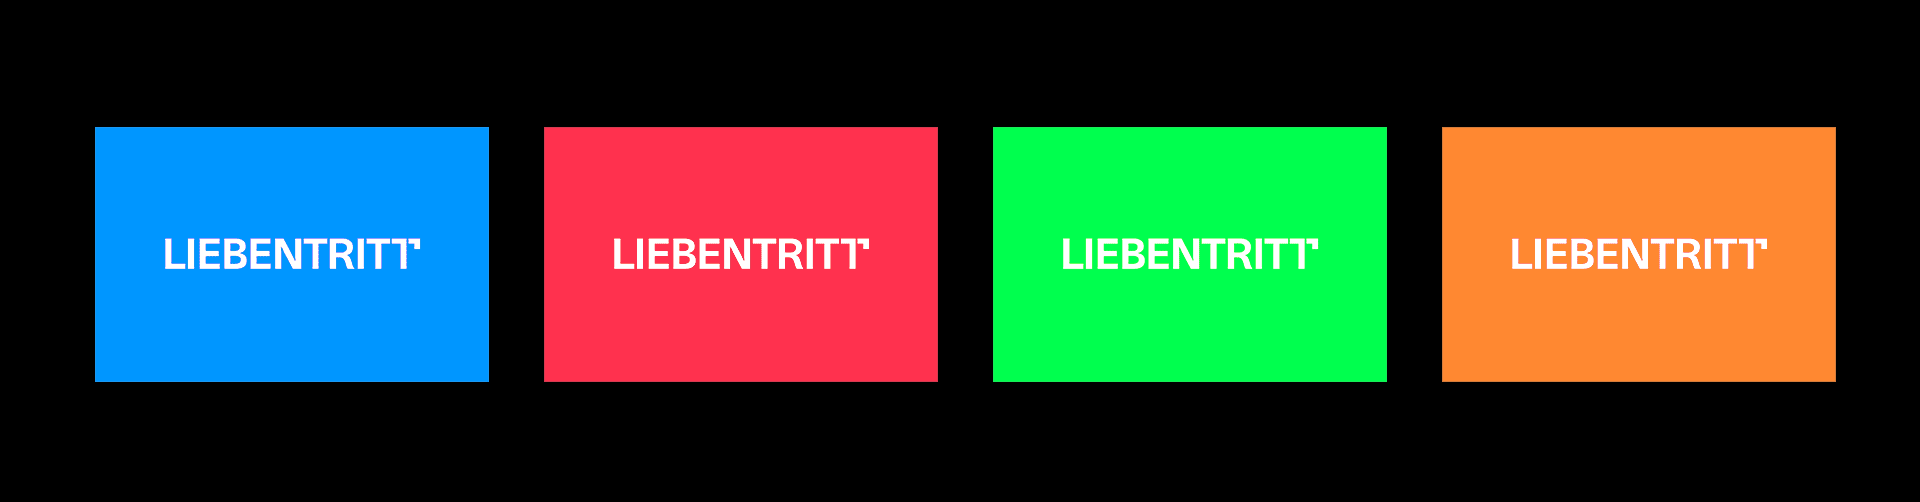 Liebentritt_logo